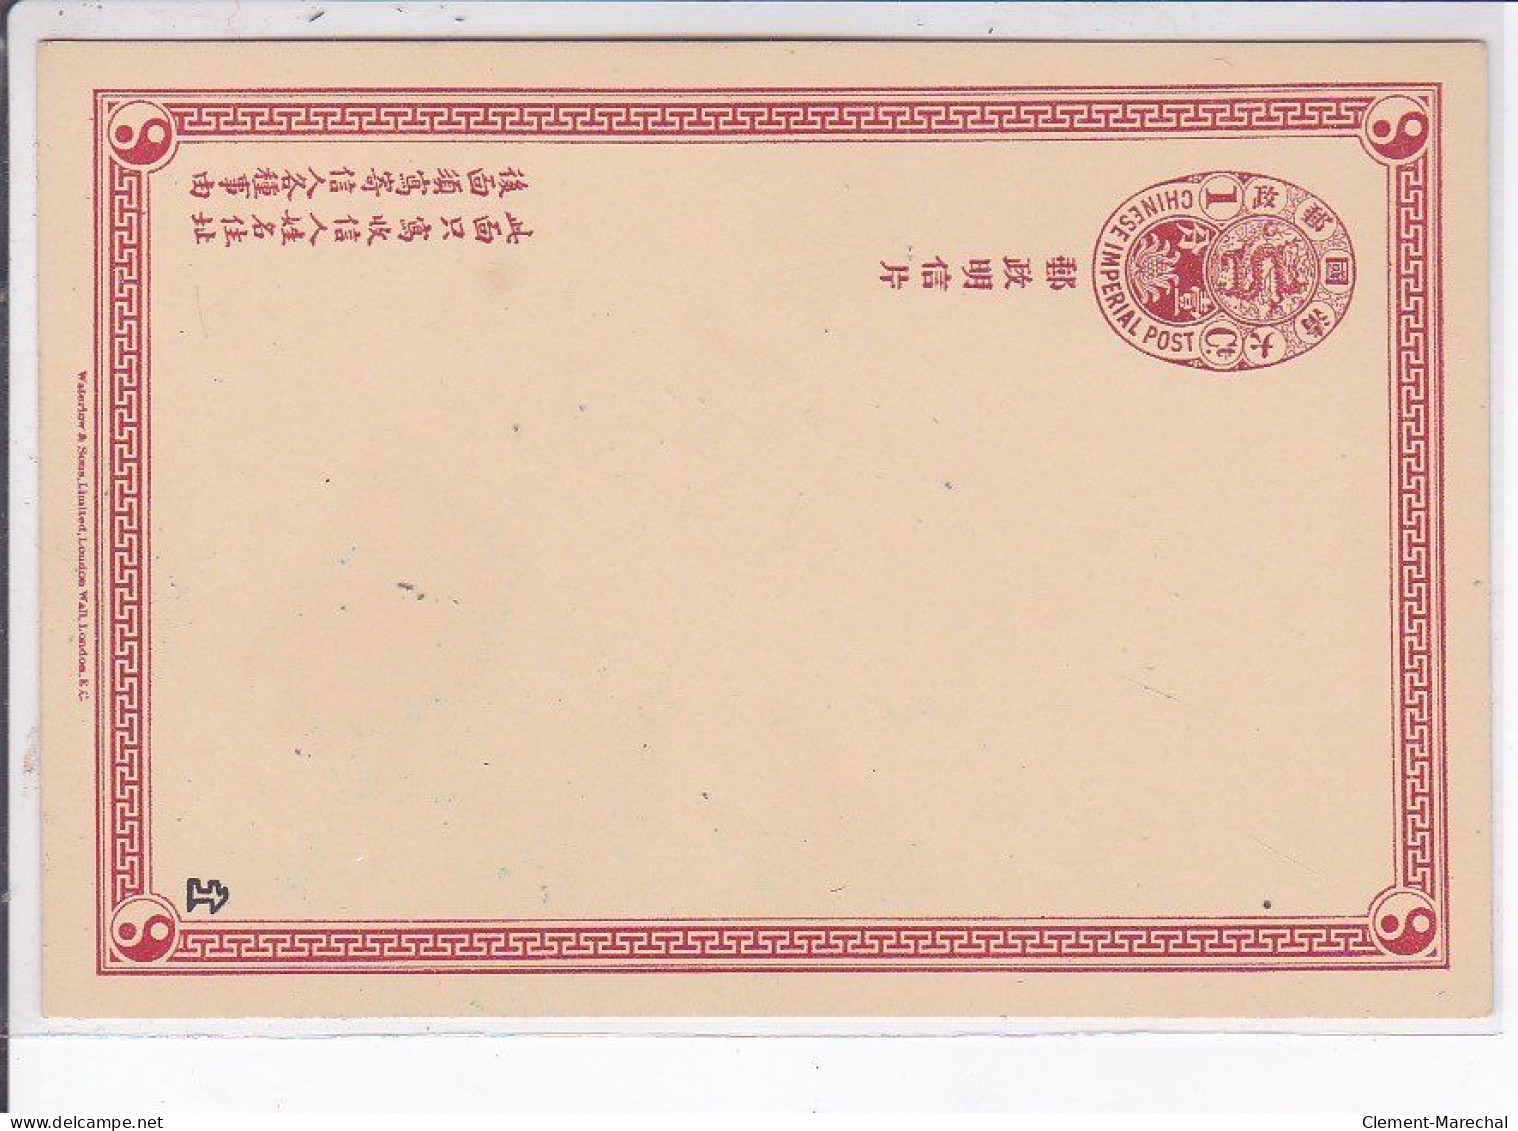 CHINE : série de 10 cartes postales avec entier postal (postal stationary) - très bon état